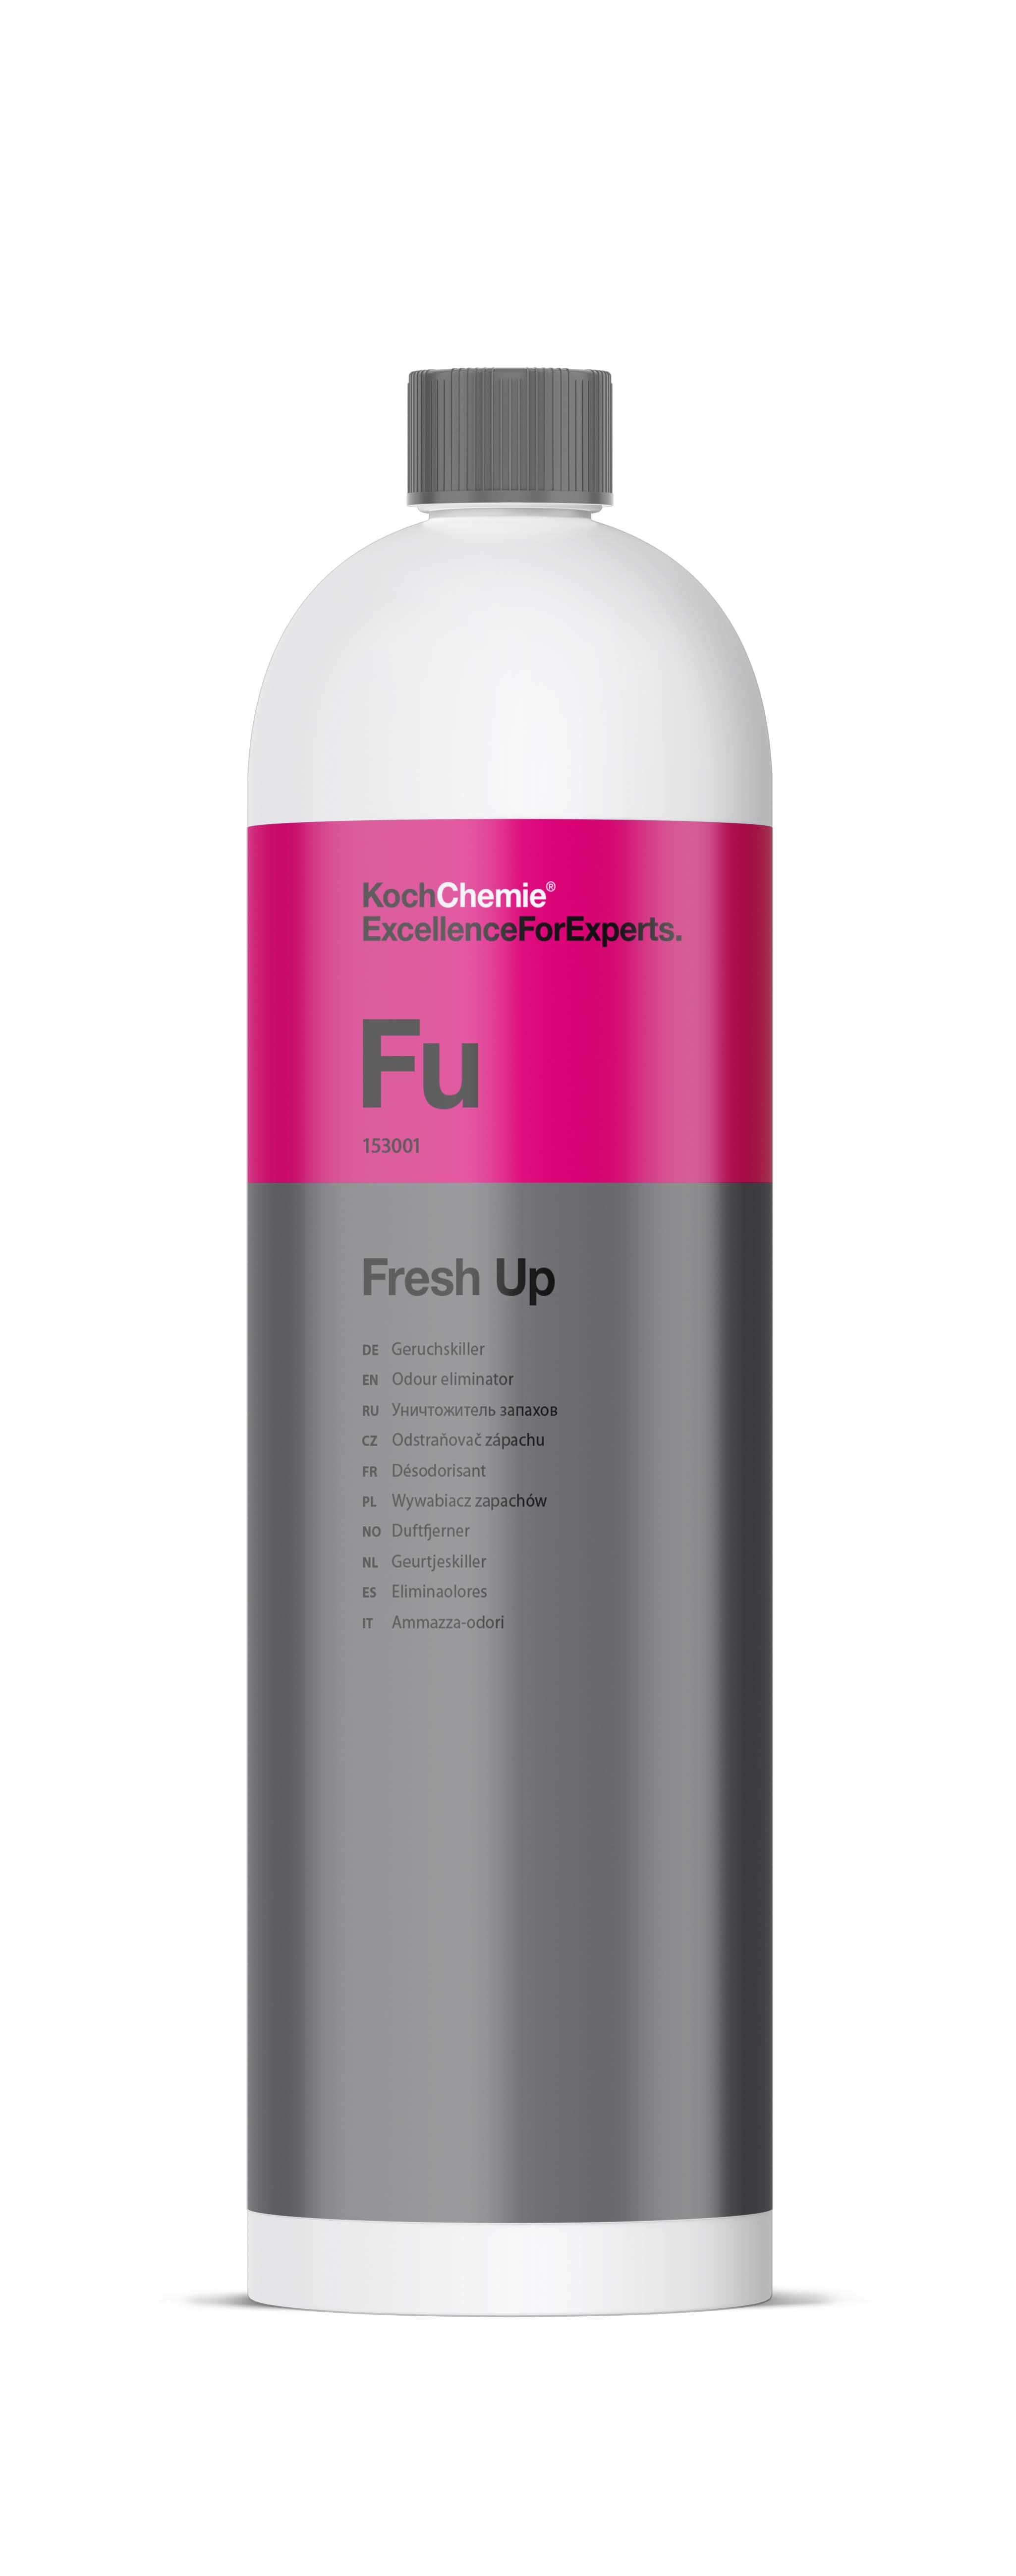 Koch Chemie Geruchskiller 1l - Fresh Up - Weigola Hygienevertrieb -  - Weigola Hygienevertrieb